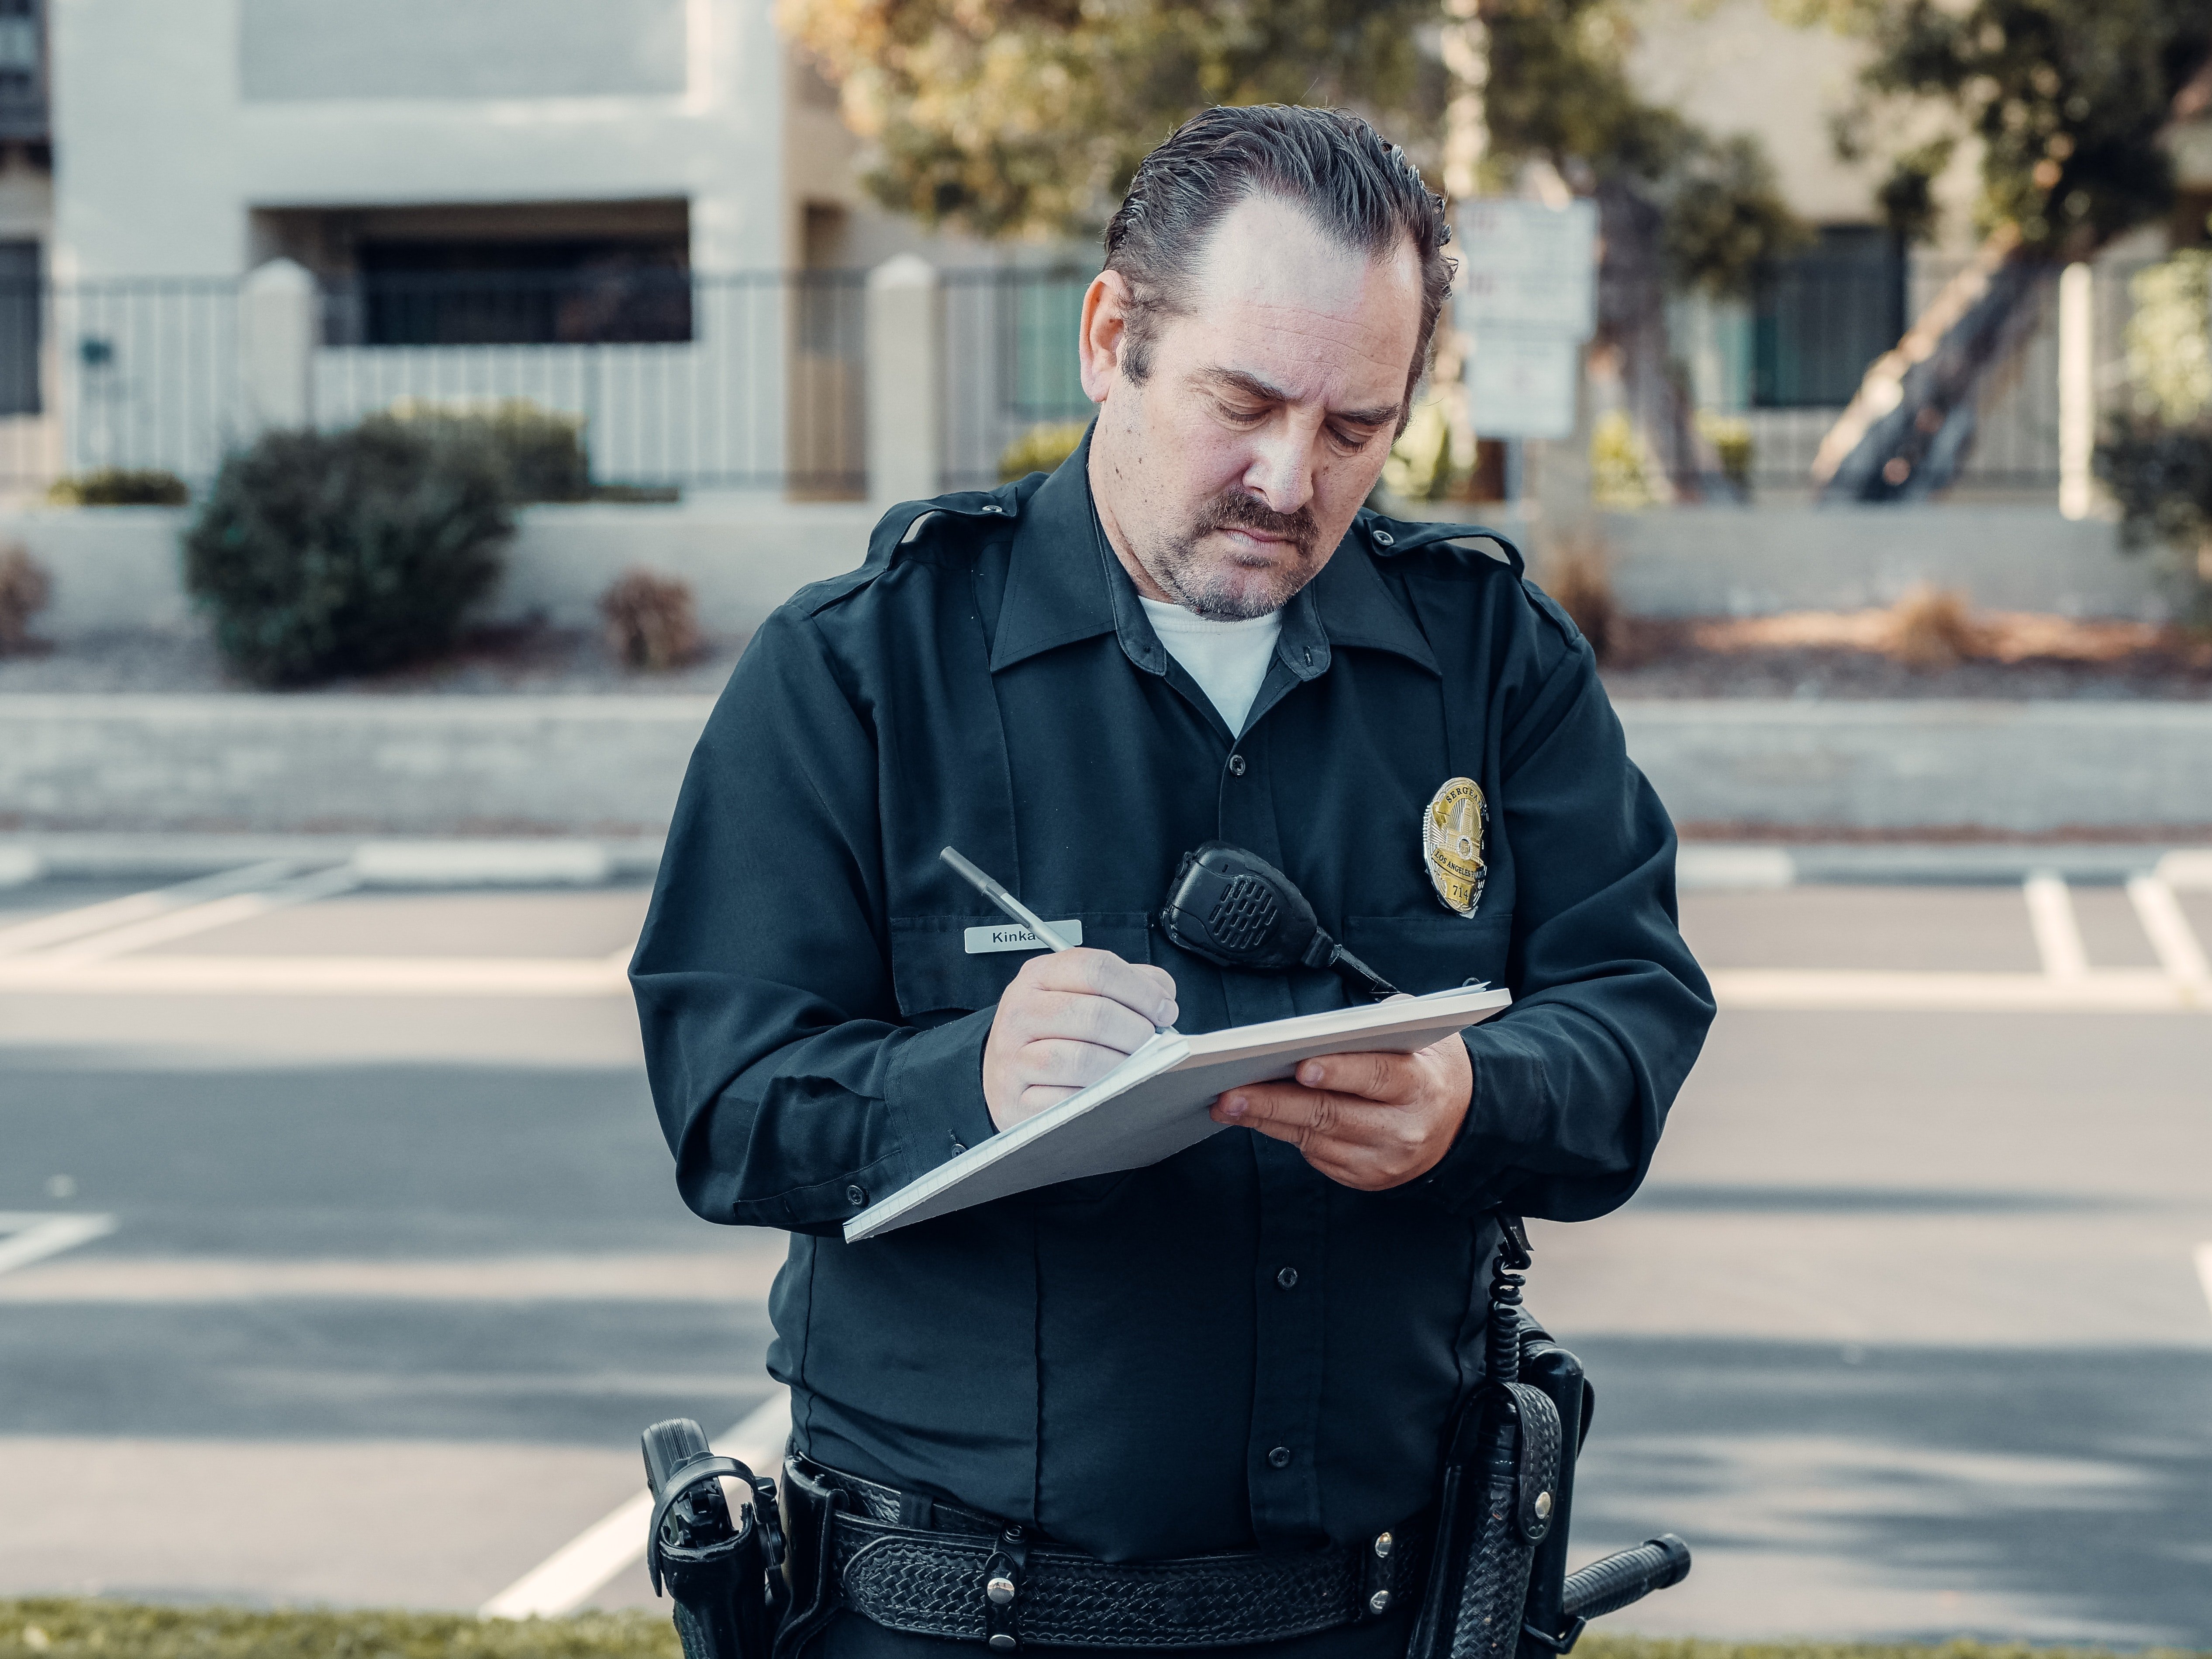 Oficial de la policía escribe en una libreta. | Foto: Pexels